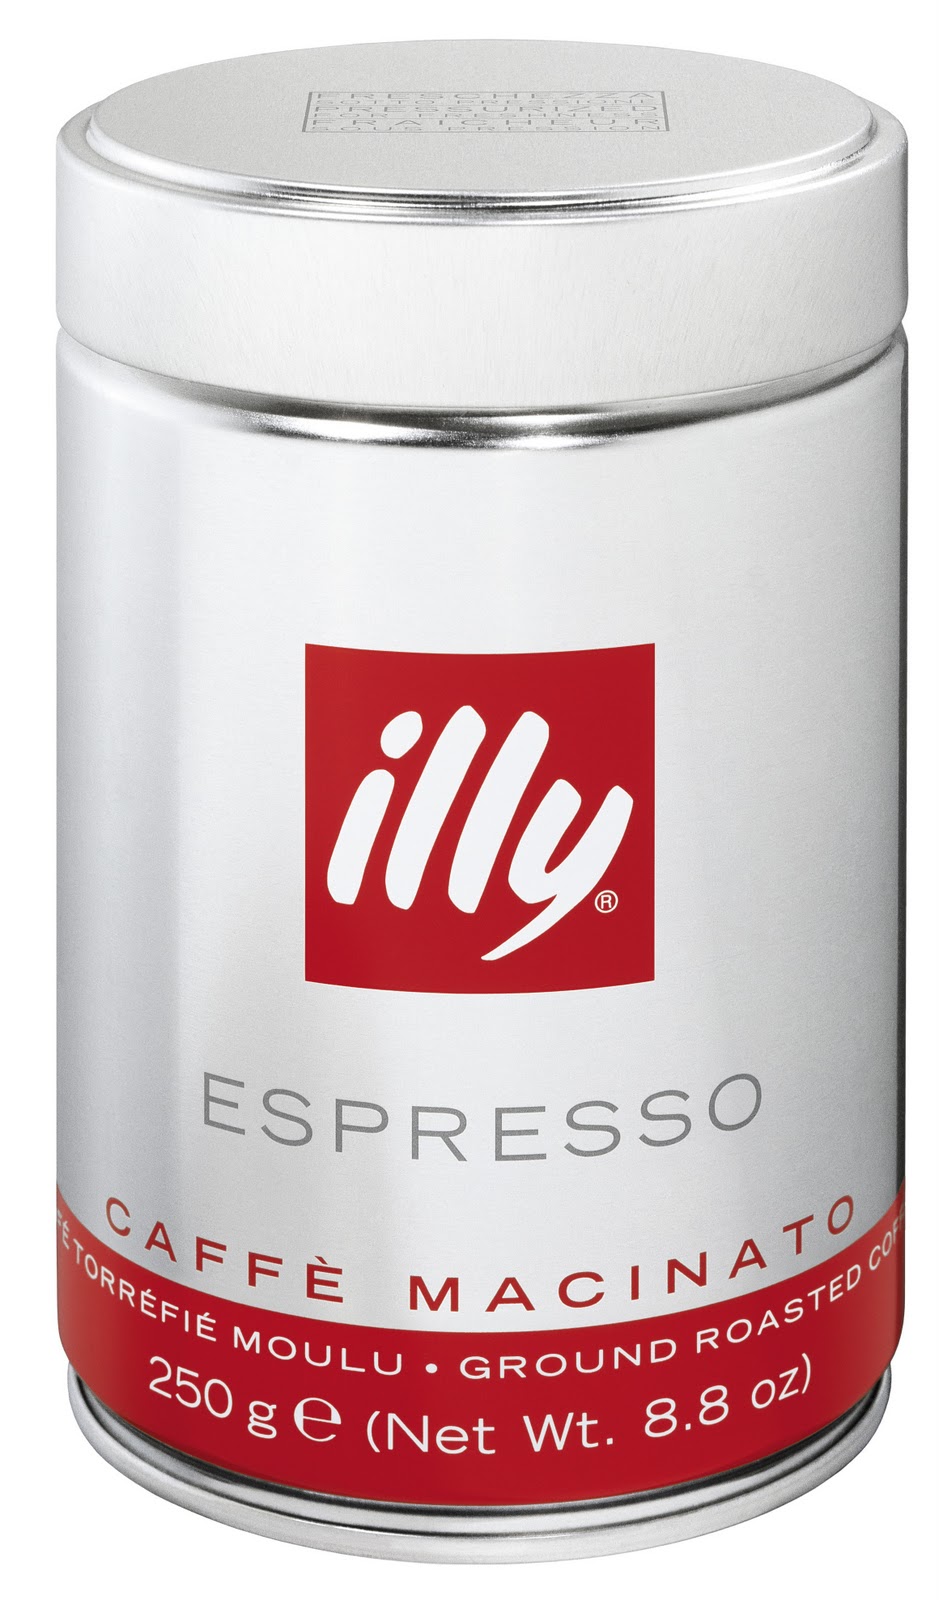 Café Illy, découvrez le top variété de la marque italienne